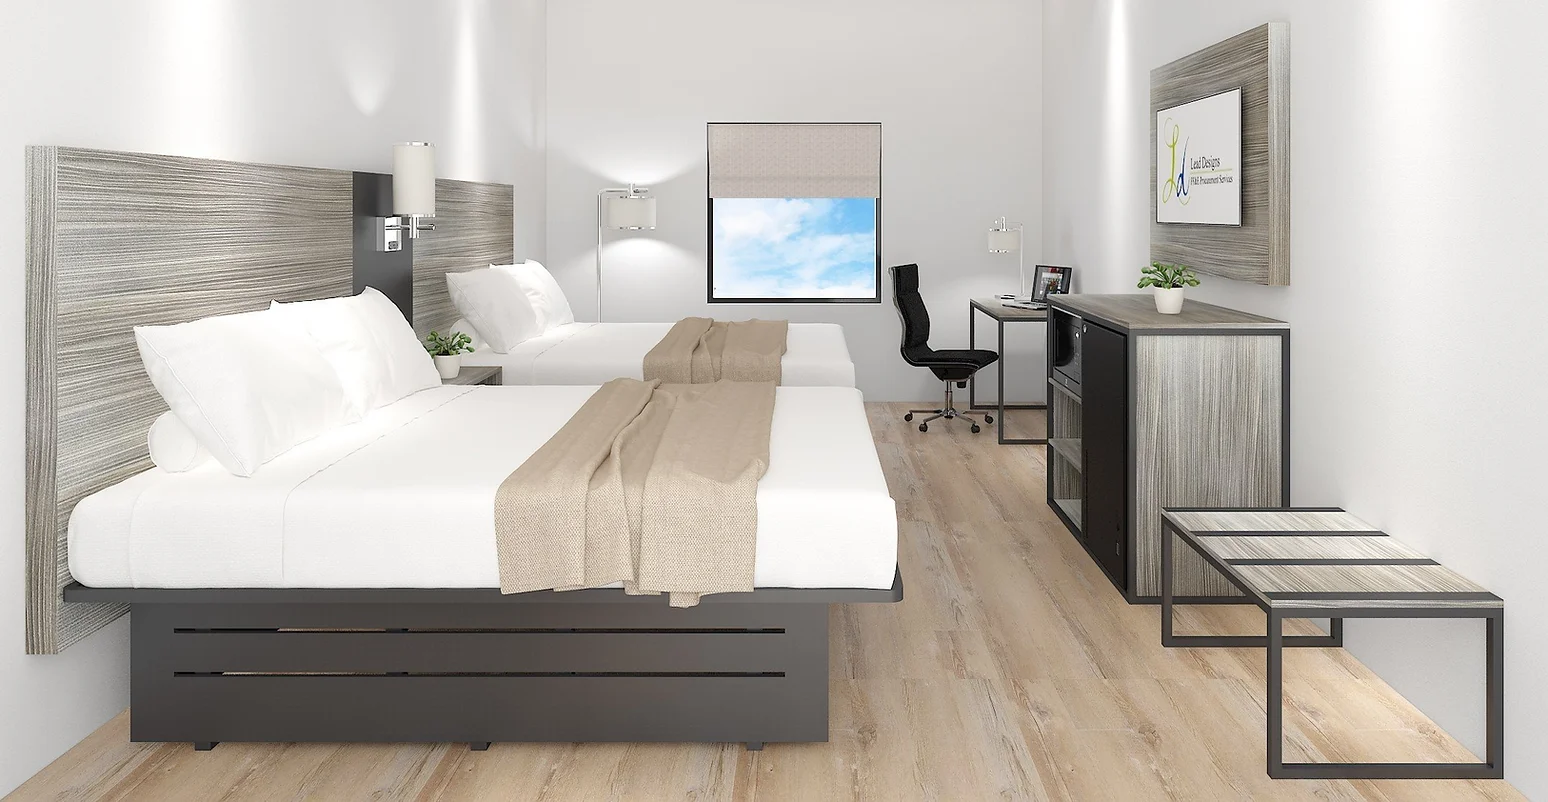 Principiile designului de mobilier personalizat hotelier